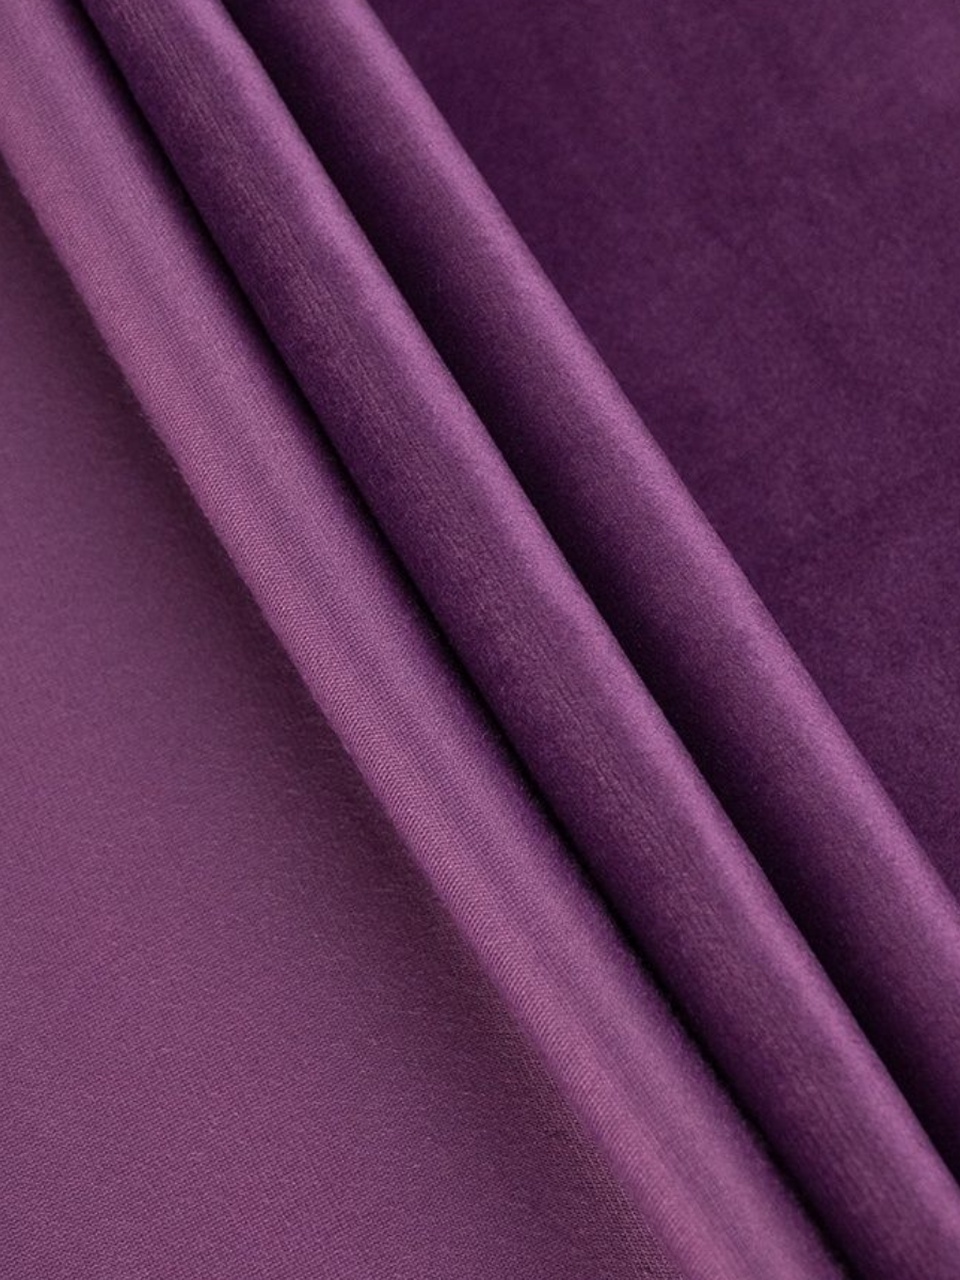 Портьеры Бархат фиолетовый - 590 ₽, заказать онлайн.